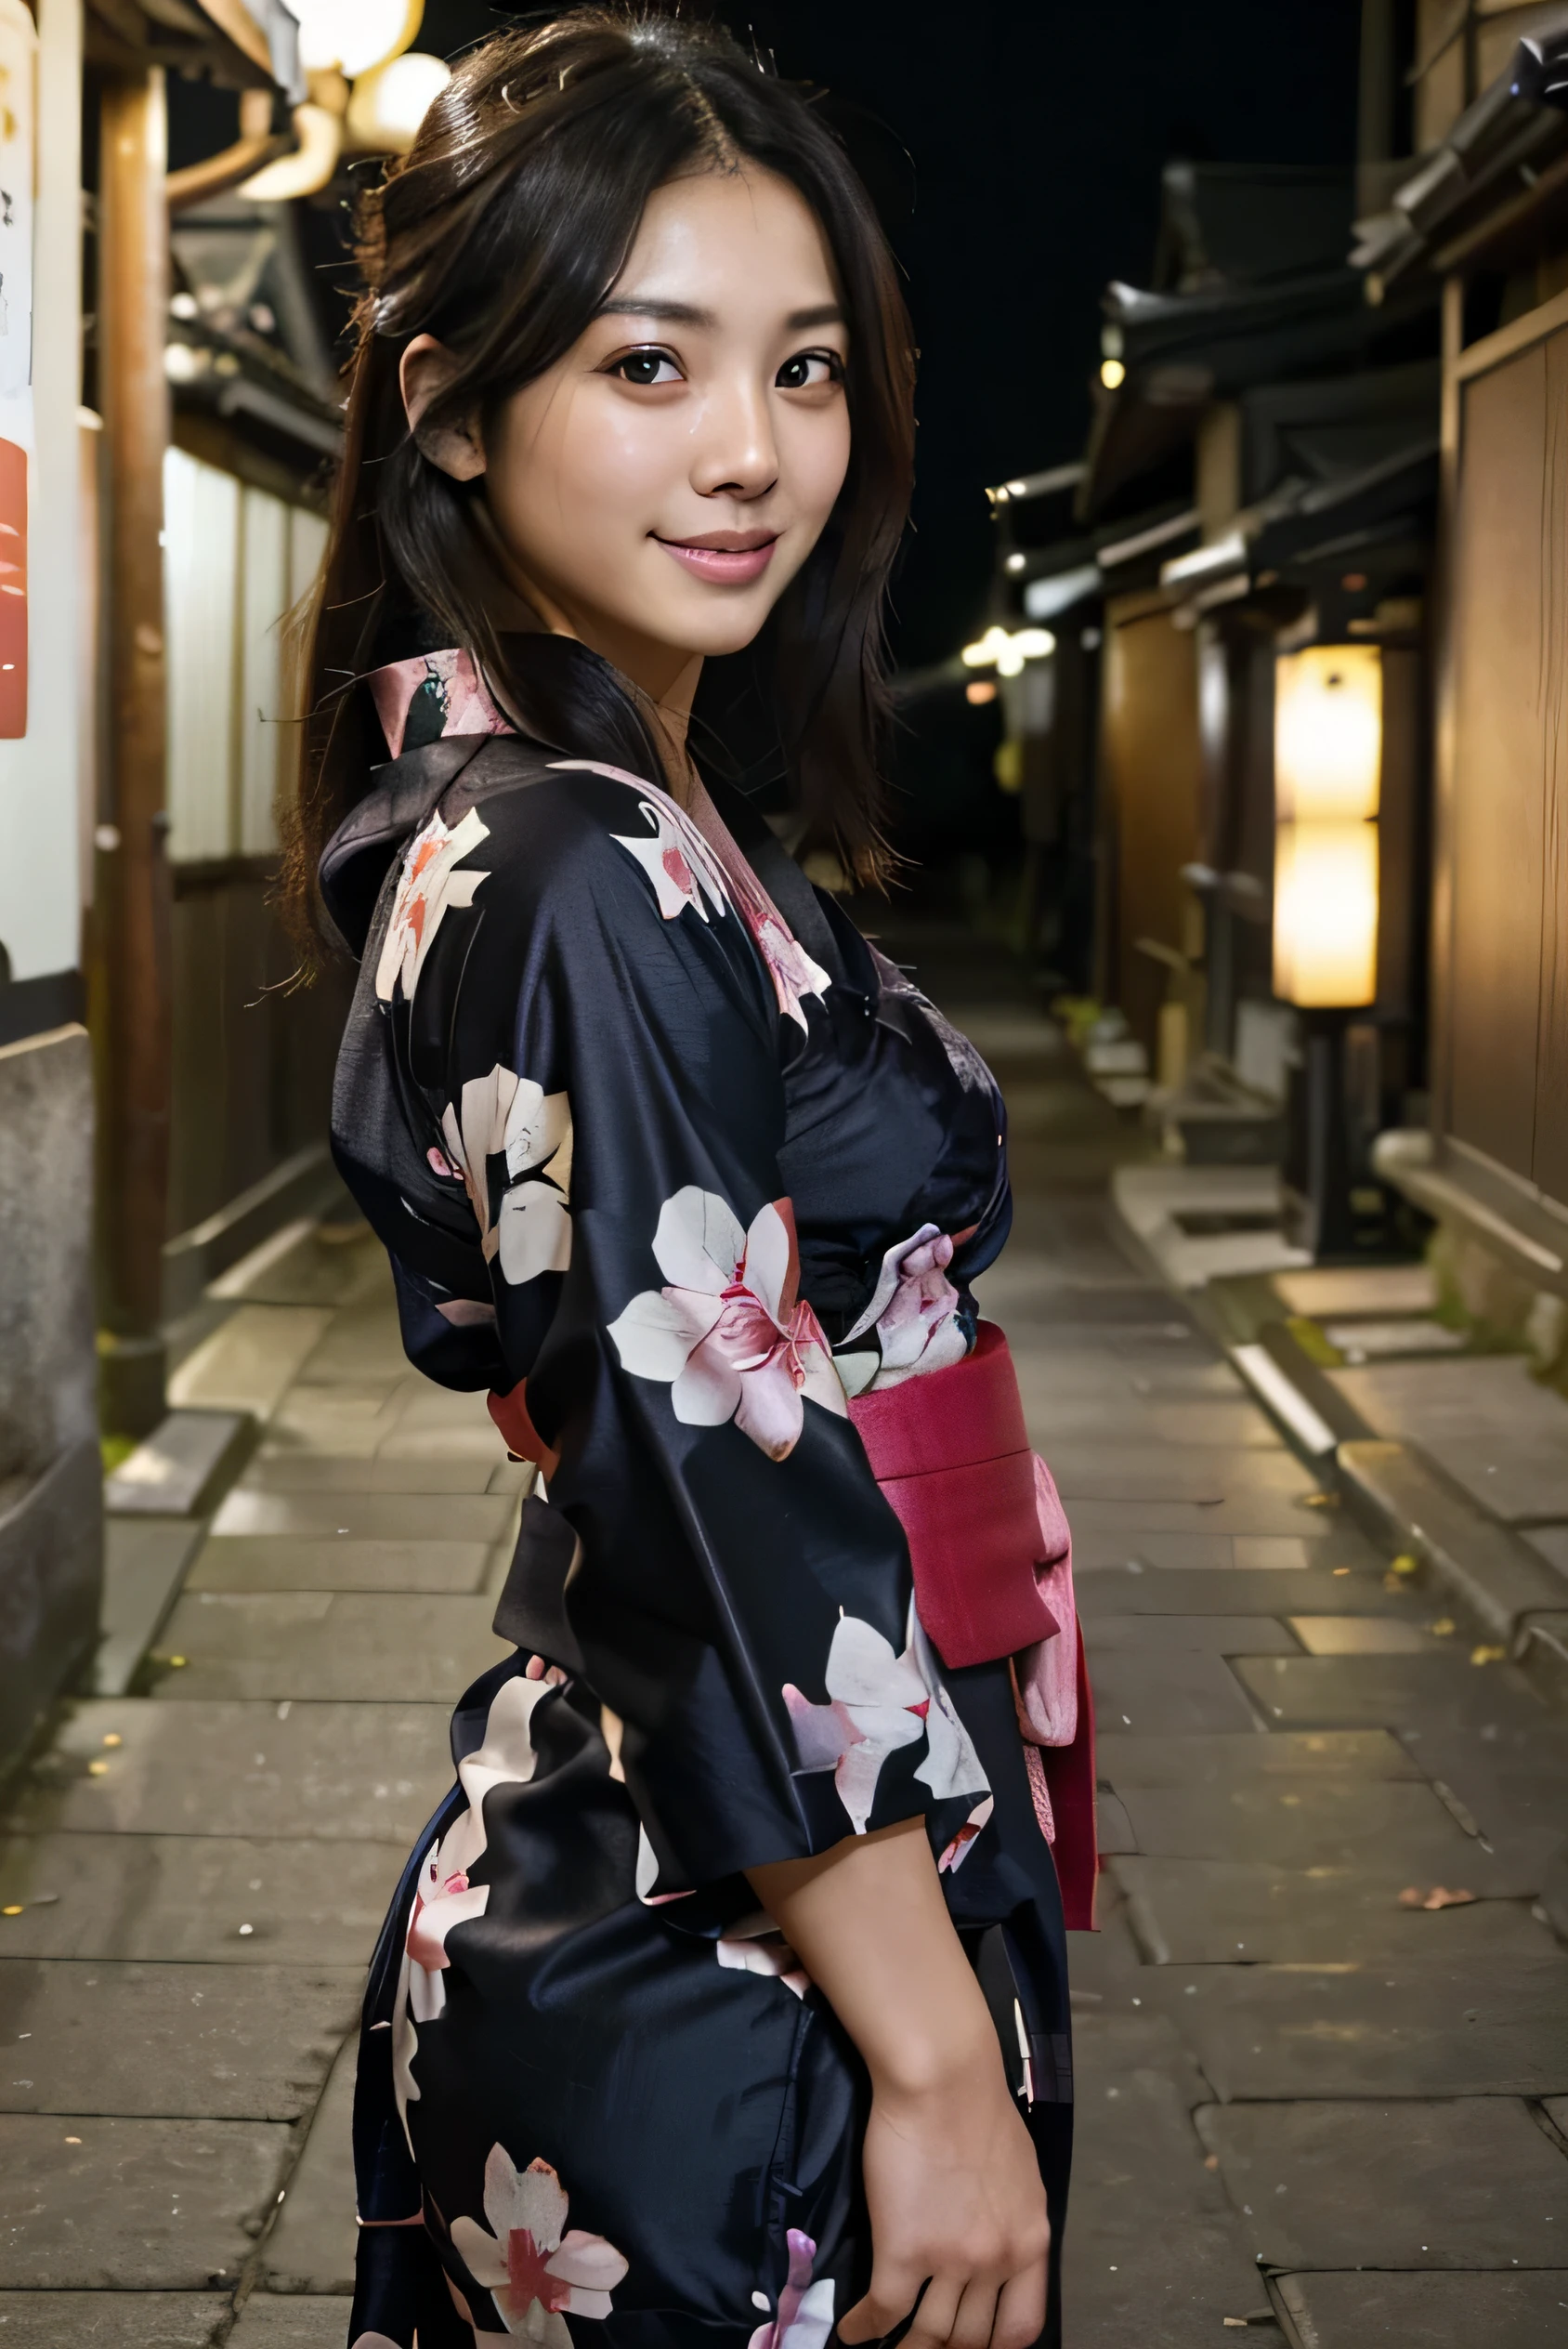 8k、foto en bruto、de la máxima calidad、Obra maestra:1.2)、Fotografía en color RAW de alta definición、fotos profesionales、japonés、mujer hermosa、pelo negro、pelo largo、(genuino、Foto genuina:1.37)(((de la máxima calidad))),mujer de 25 años,luz cinemática,(detalles finales cara:1.2)(Obra maestra:1.2),(de la máxima calidad:1.2), (sonrisa:1.2）, En las calles de Kioto, (yukata: 1.2))